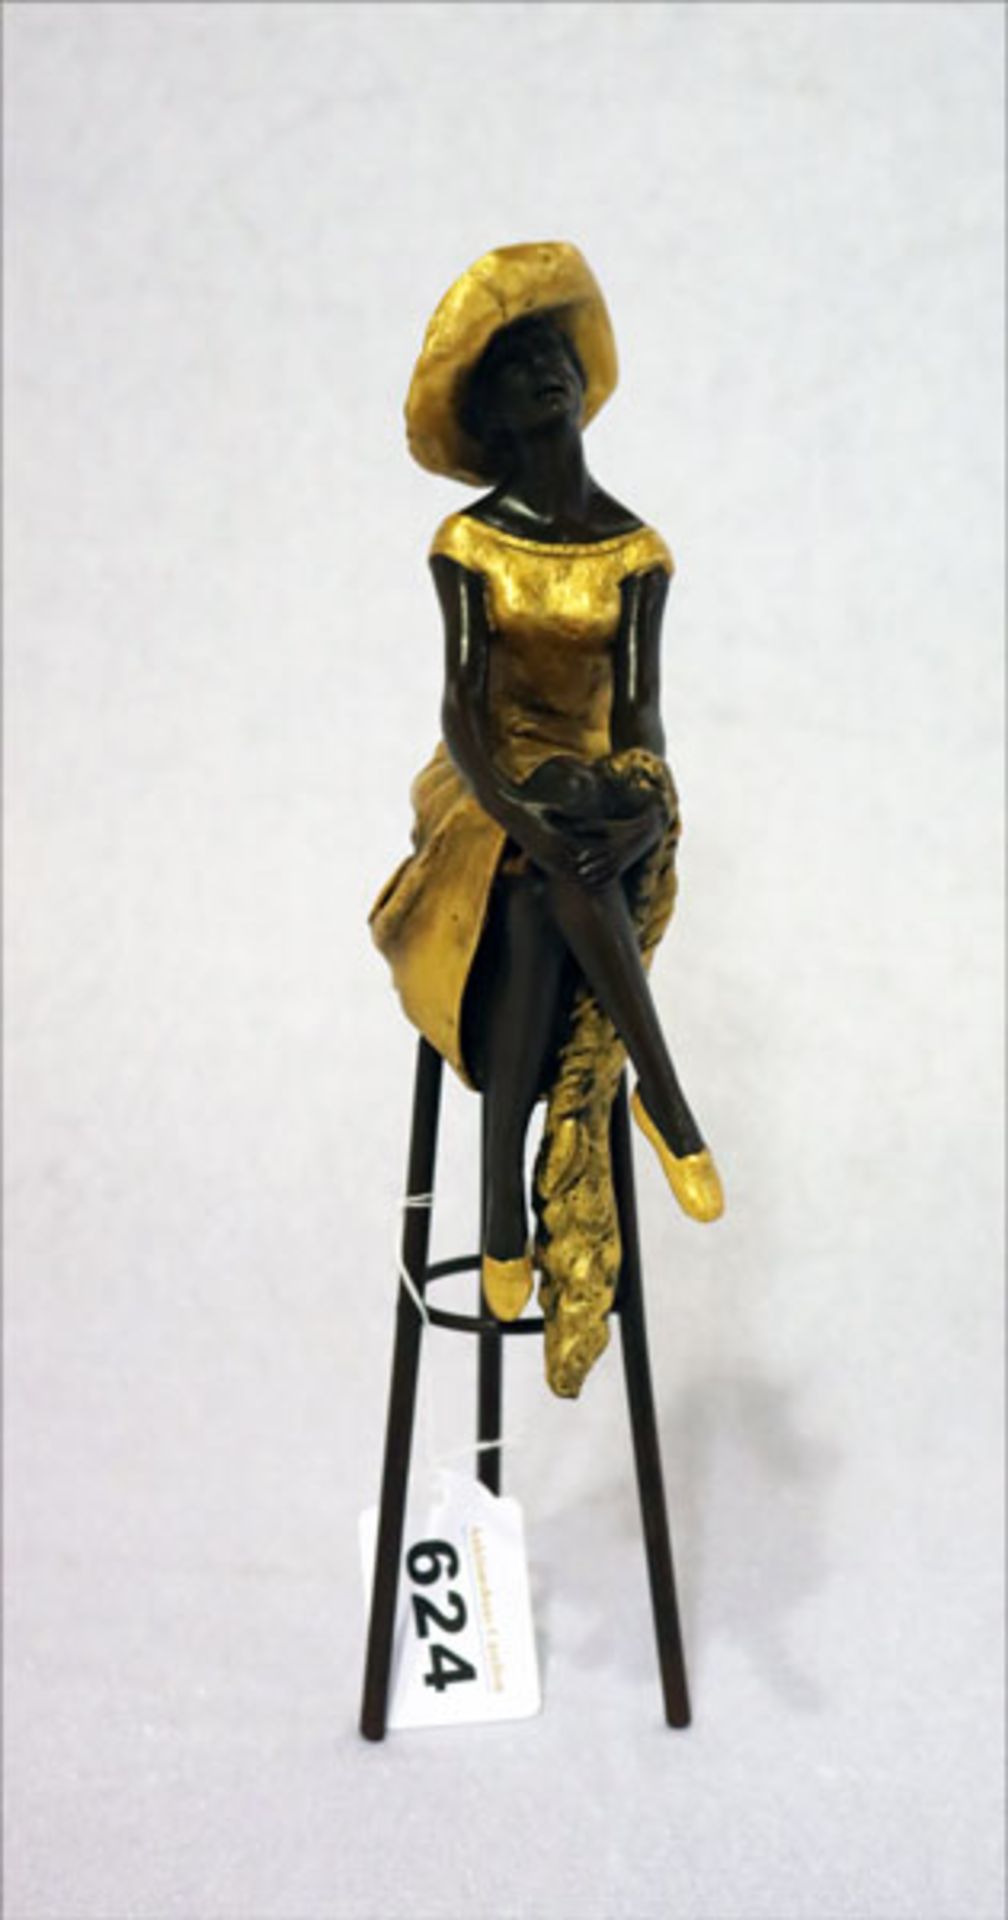 Metall Fiugur 'Frau auf Barhocker', teils Gold bemalt, H 28 cm